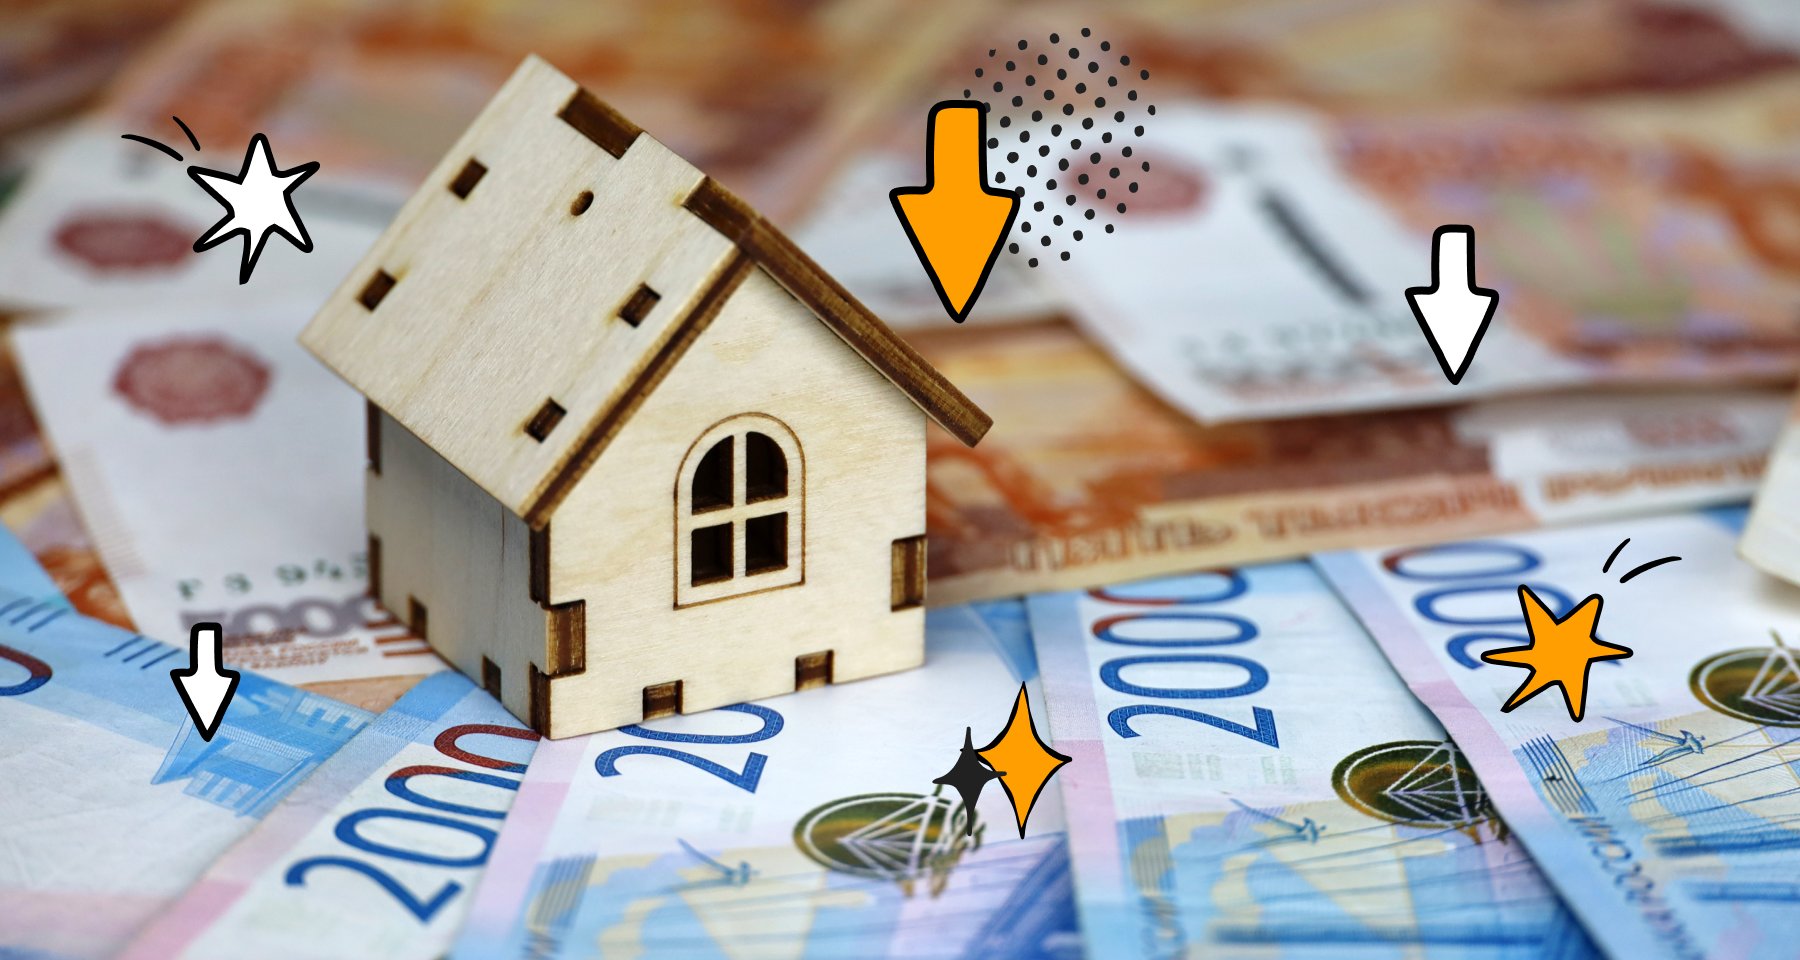 ТОП 5 способов как уменьшить ежемесячный платеж по ипотеке | Банки.ру